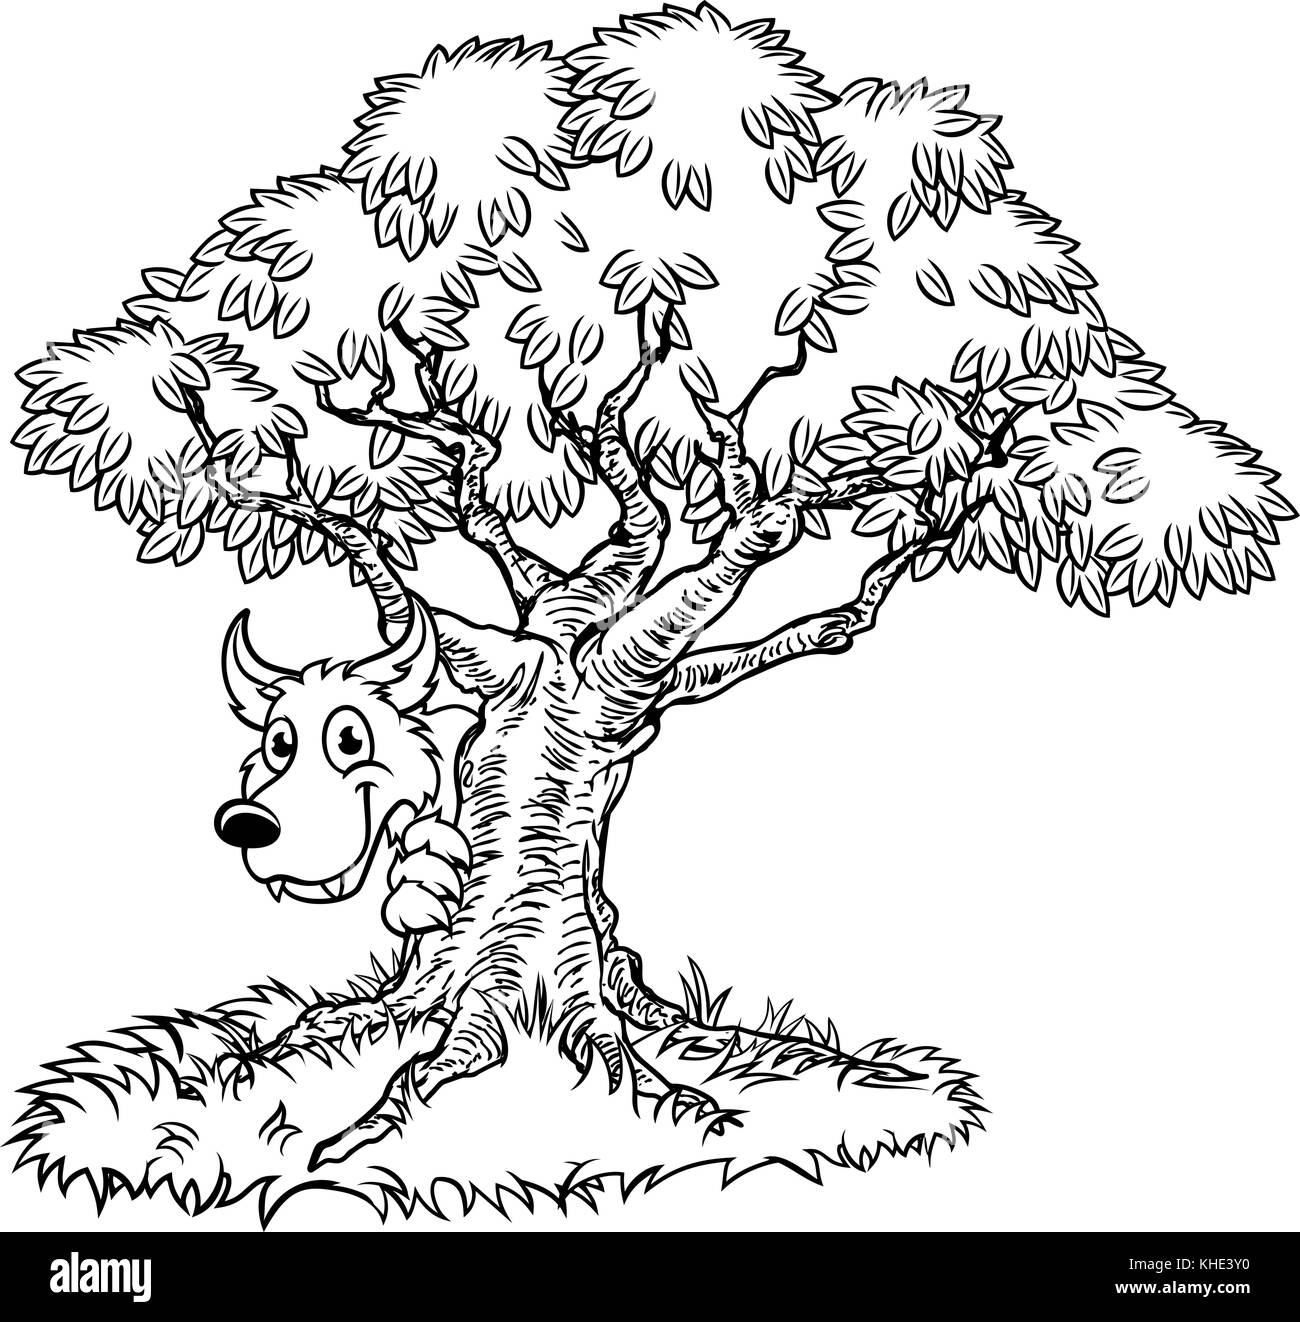 Conte de fées Big Bad Wolf et Tree Cartoon Illustration de Vecteur